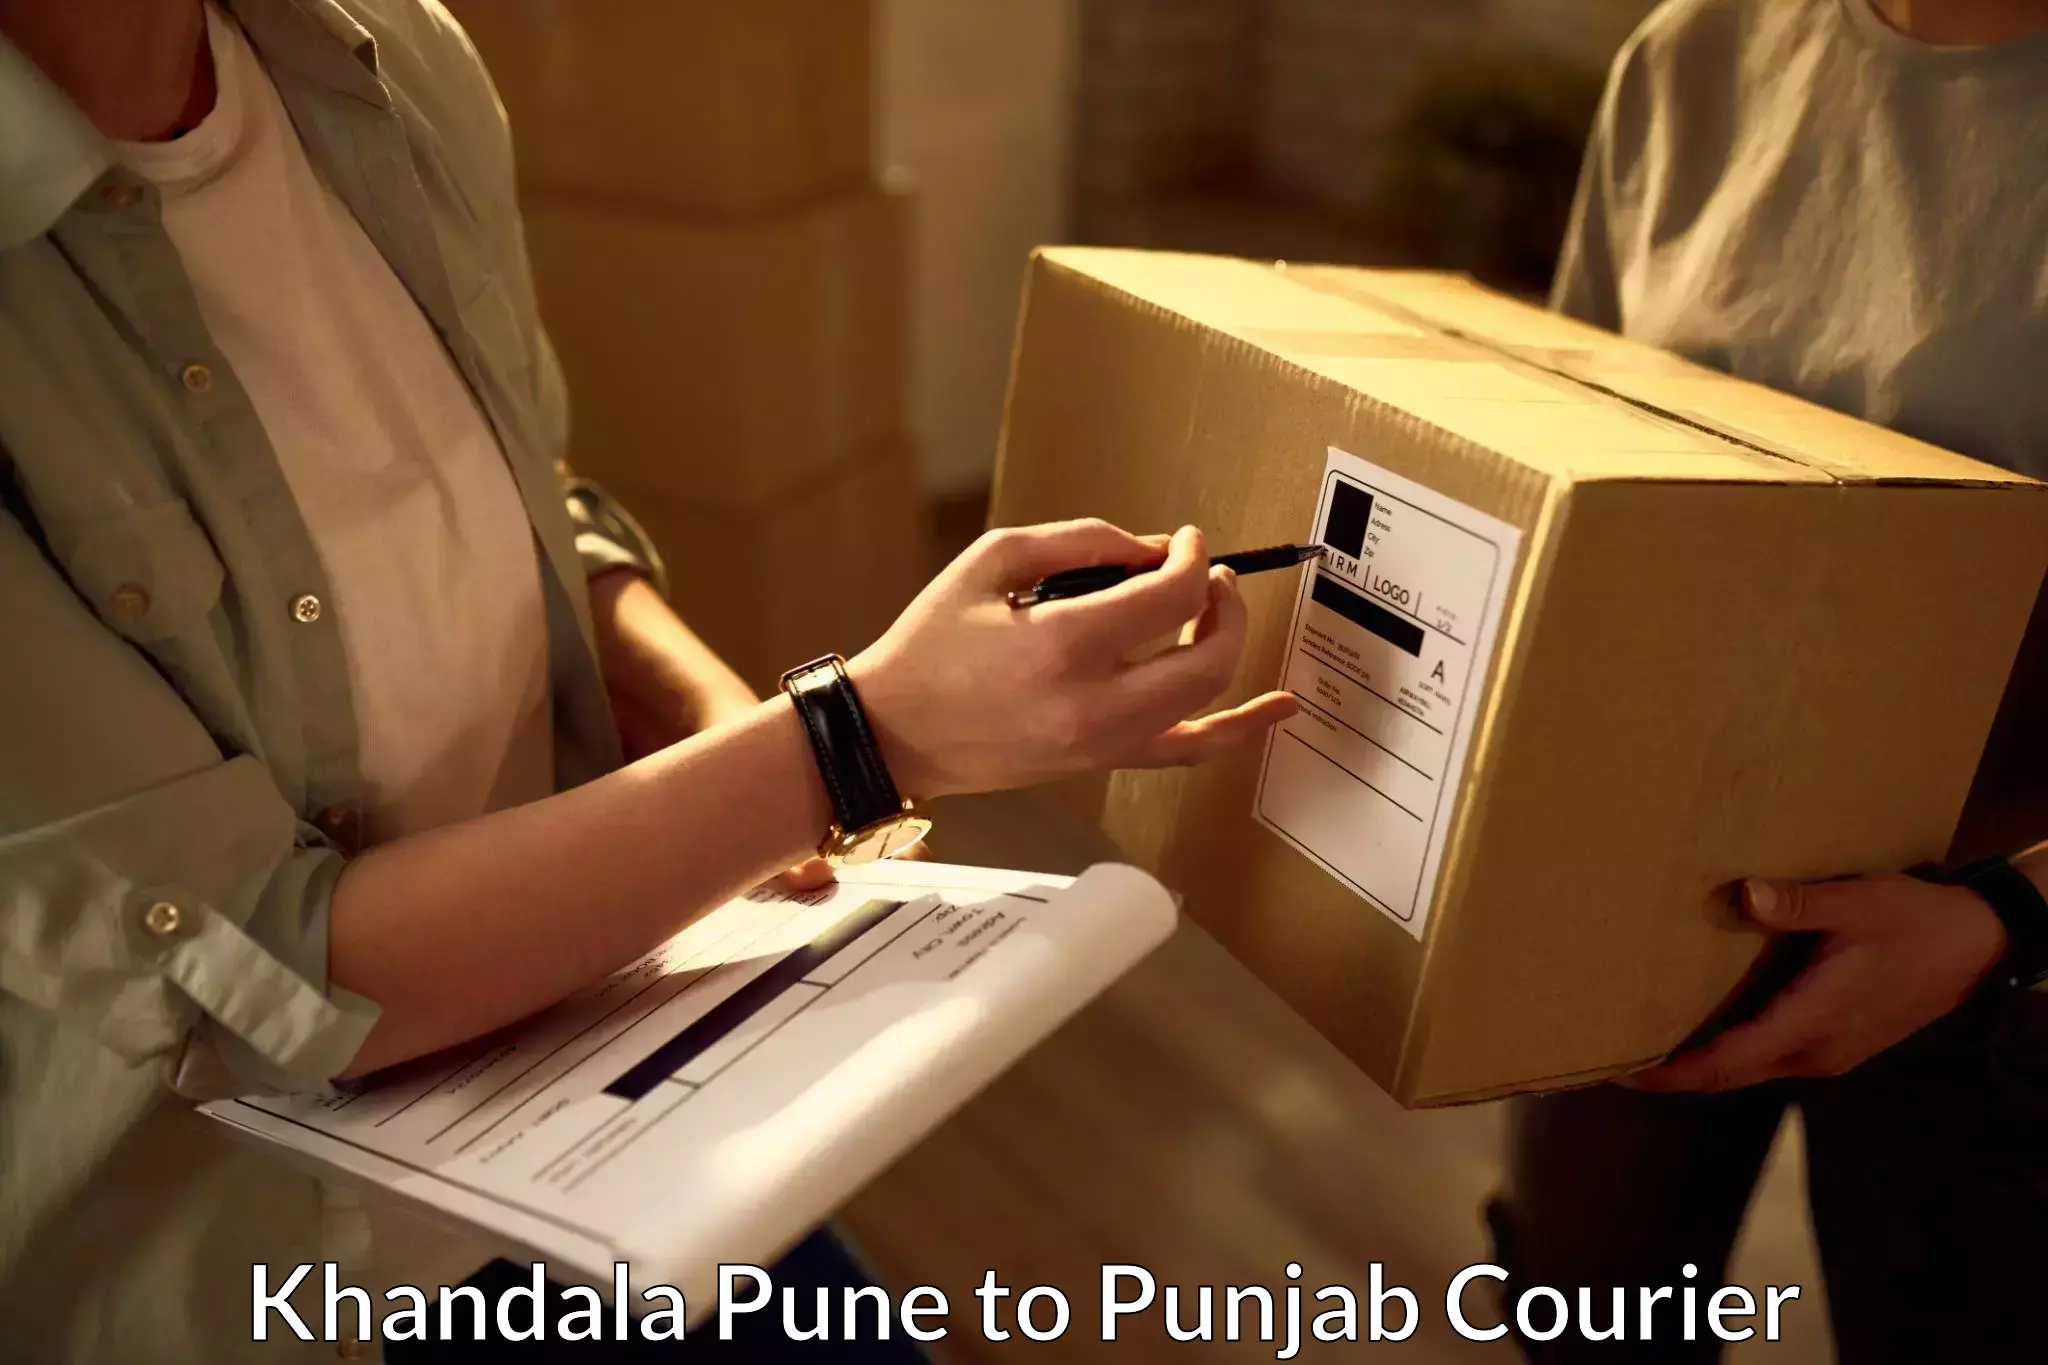 Bulk shipment Khandala Pune to Anandpur Sahib